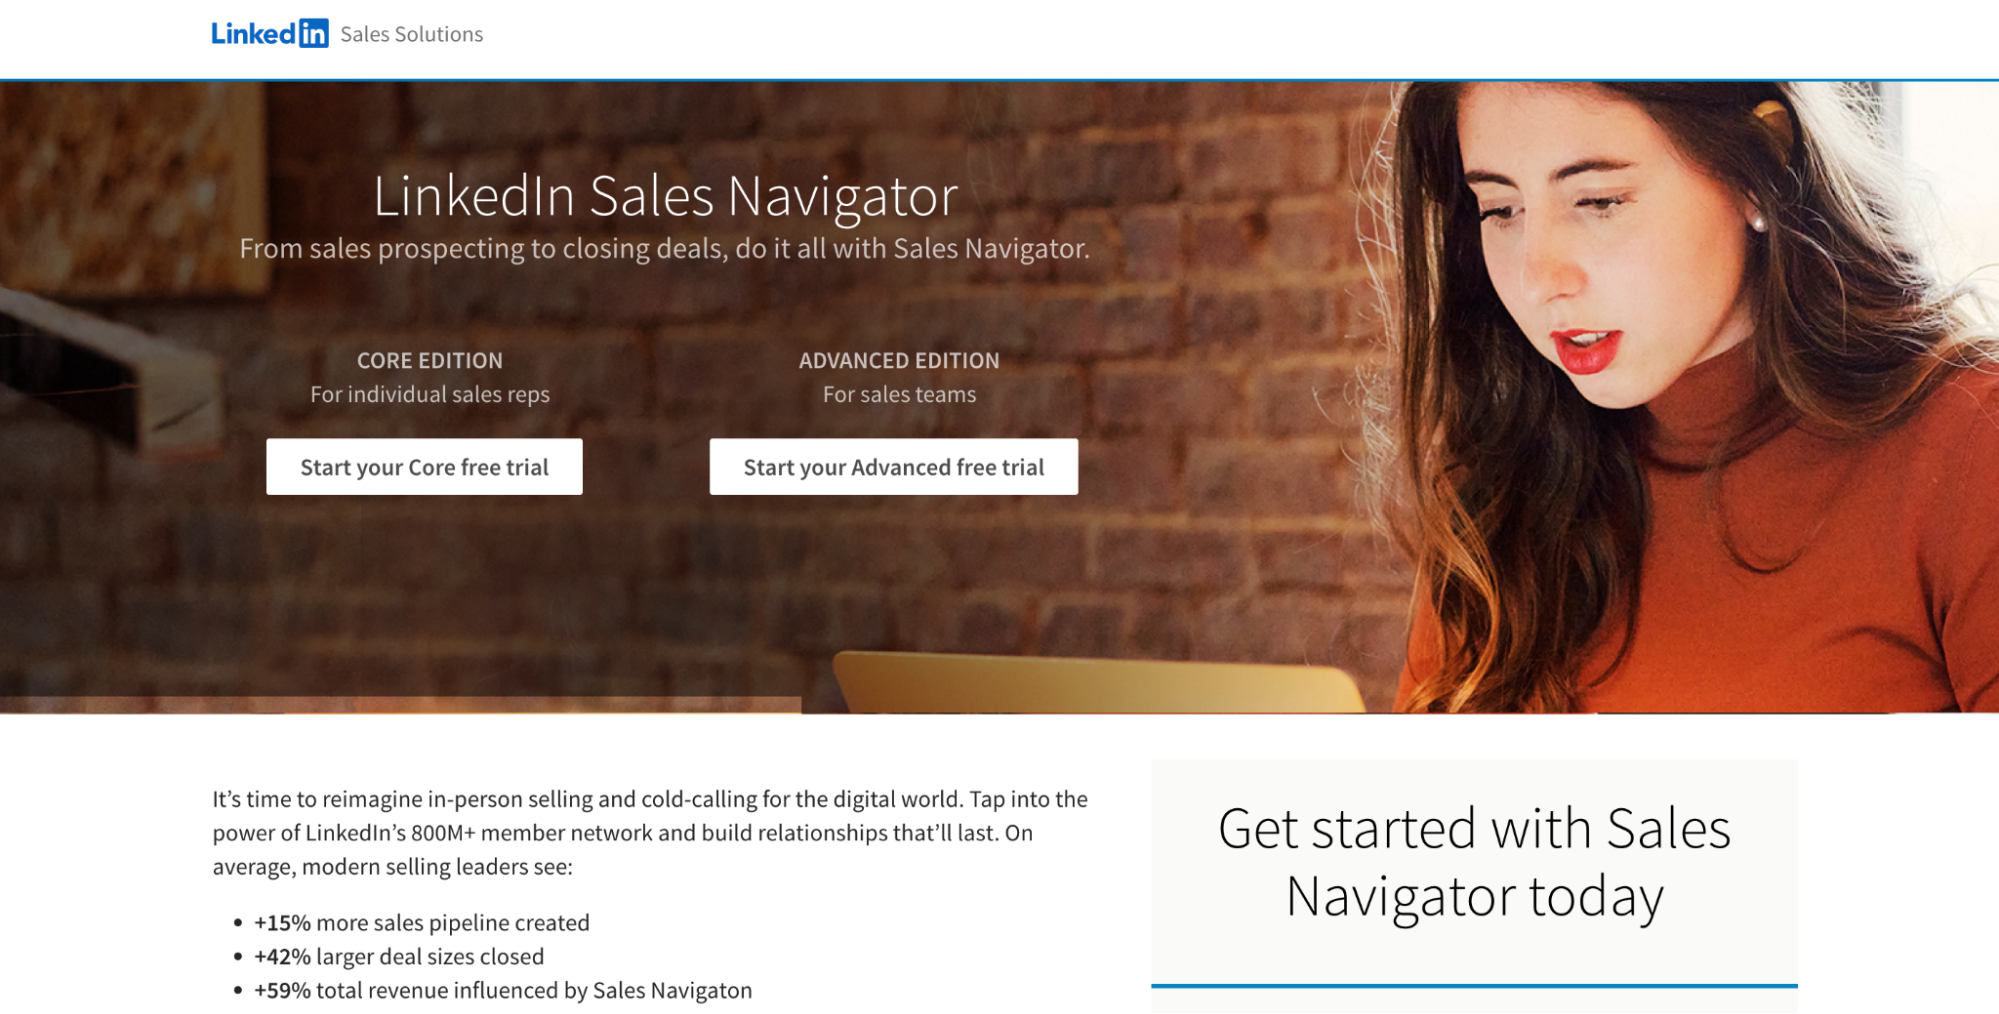 LinkedIn Sales Navigator 